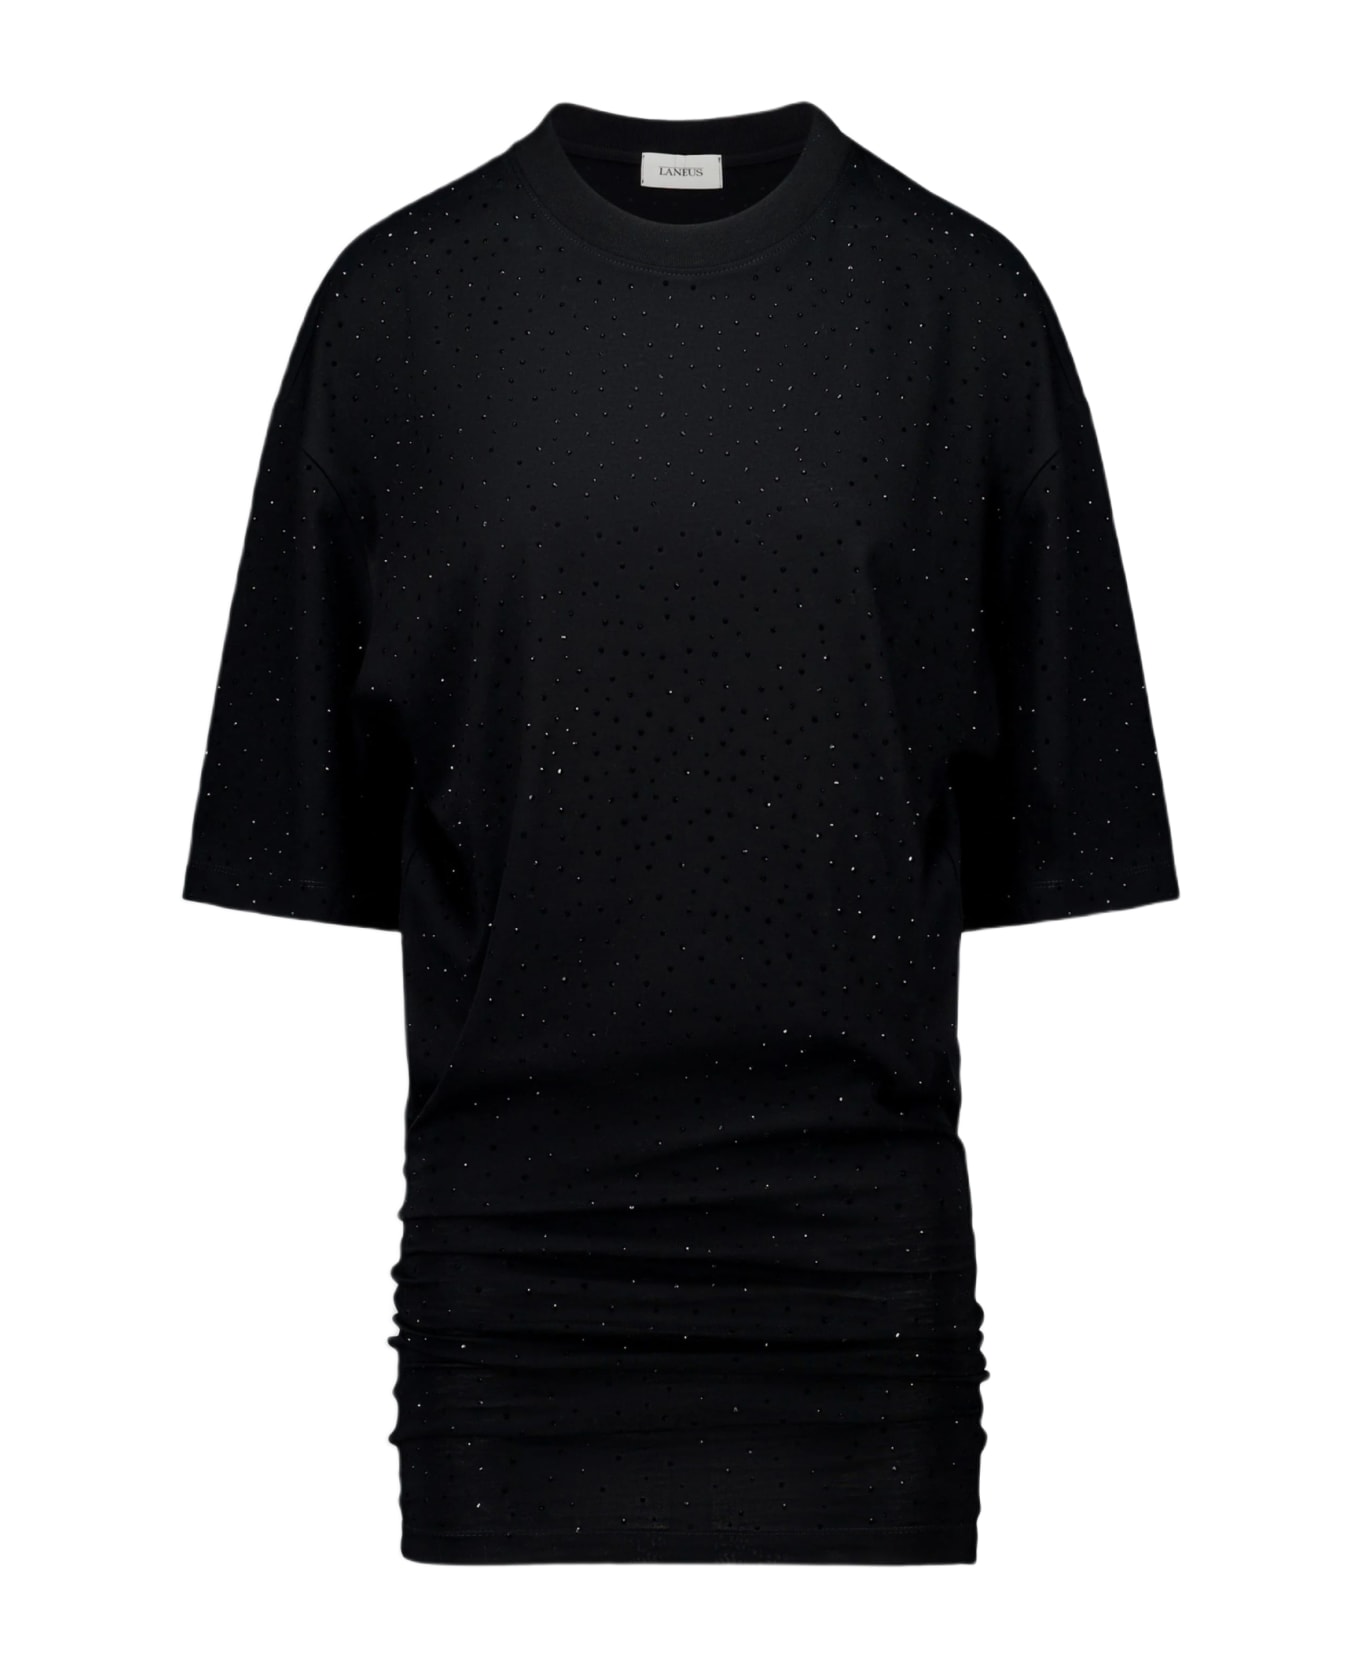 Laneus Jersey Dress Woman Black cotton mini dress with crystals - Jersey Mini Dress - Nero